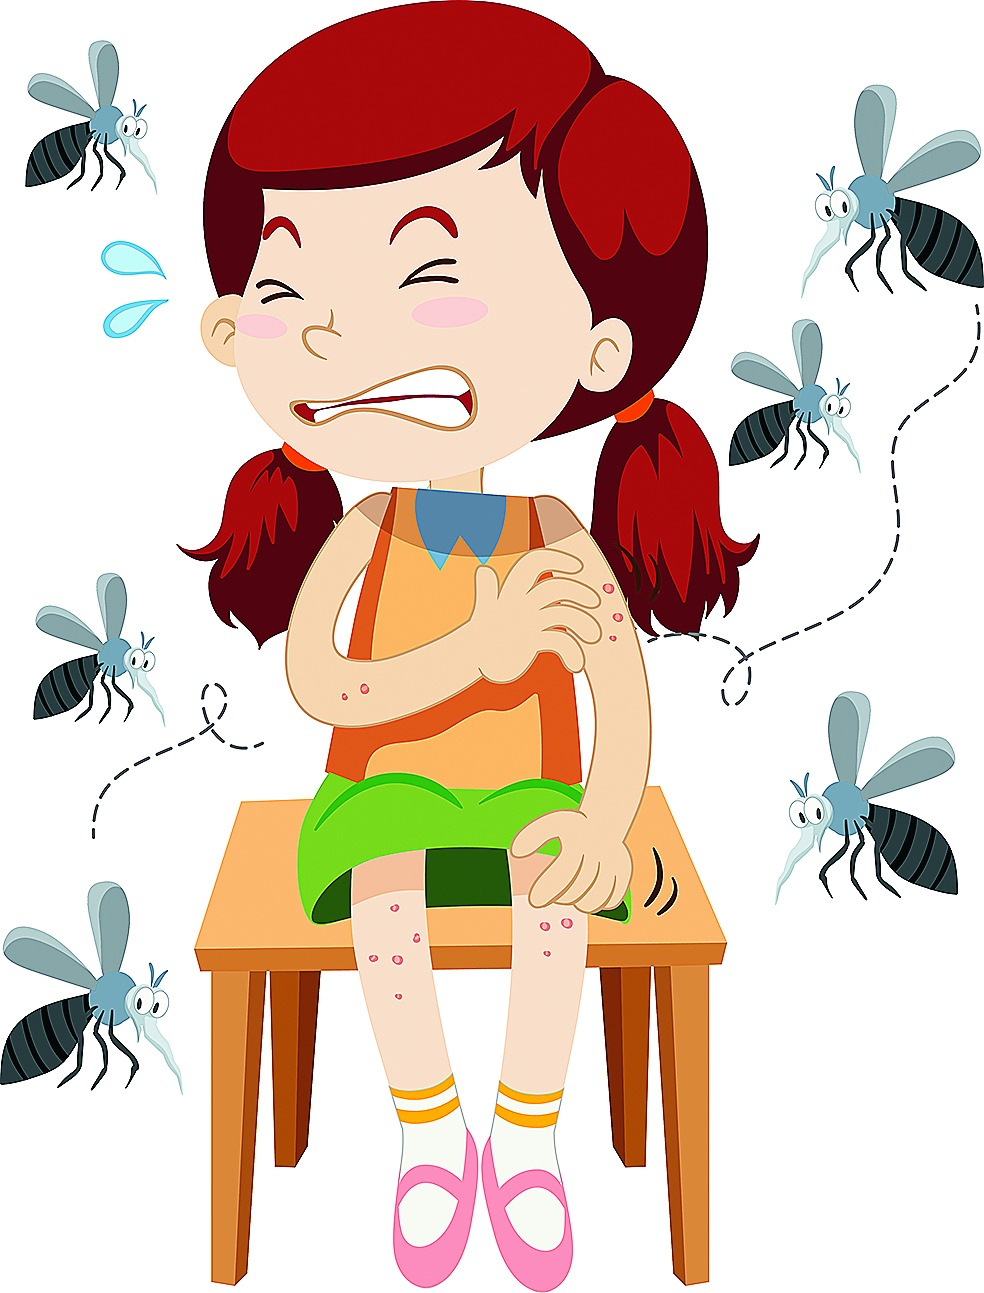 Triệu chứng điển hình của người bệnh khi bị sốt xuất huyết bạn cần biết